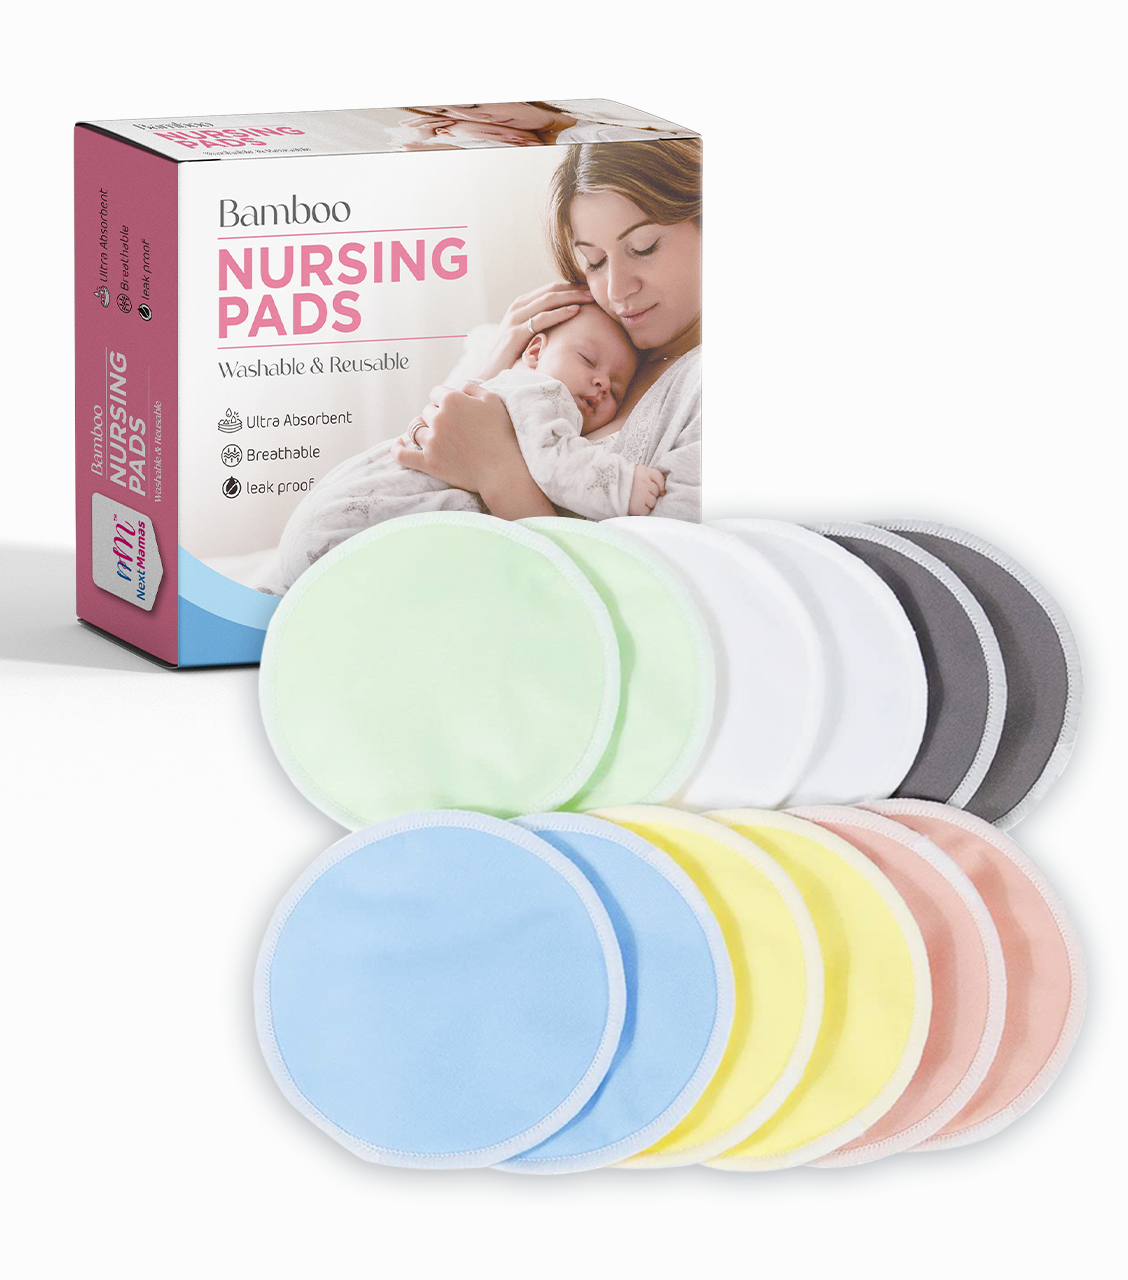 Washable Breathable Breast Pad Nursing Pad Breast Pad Anti-Leak